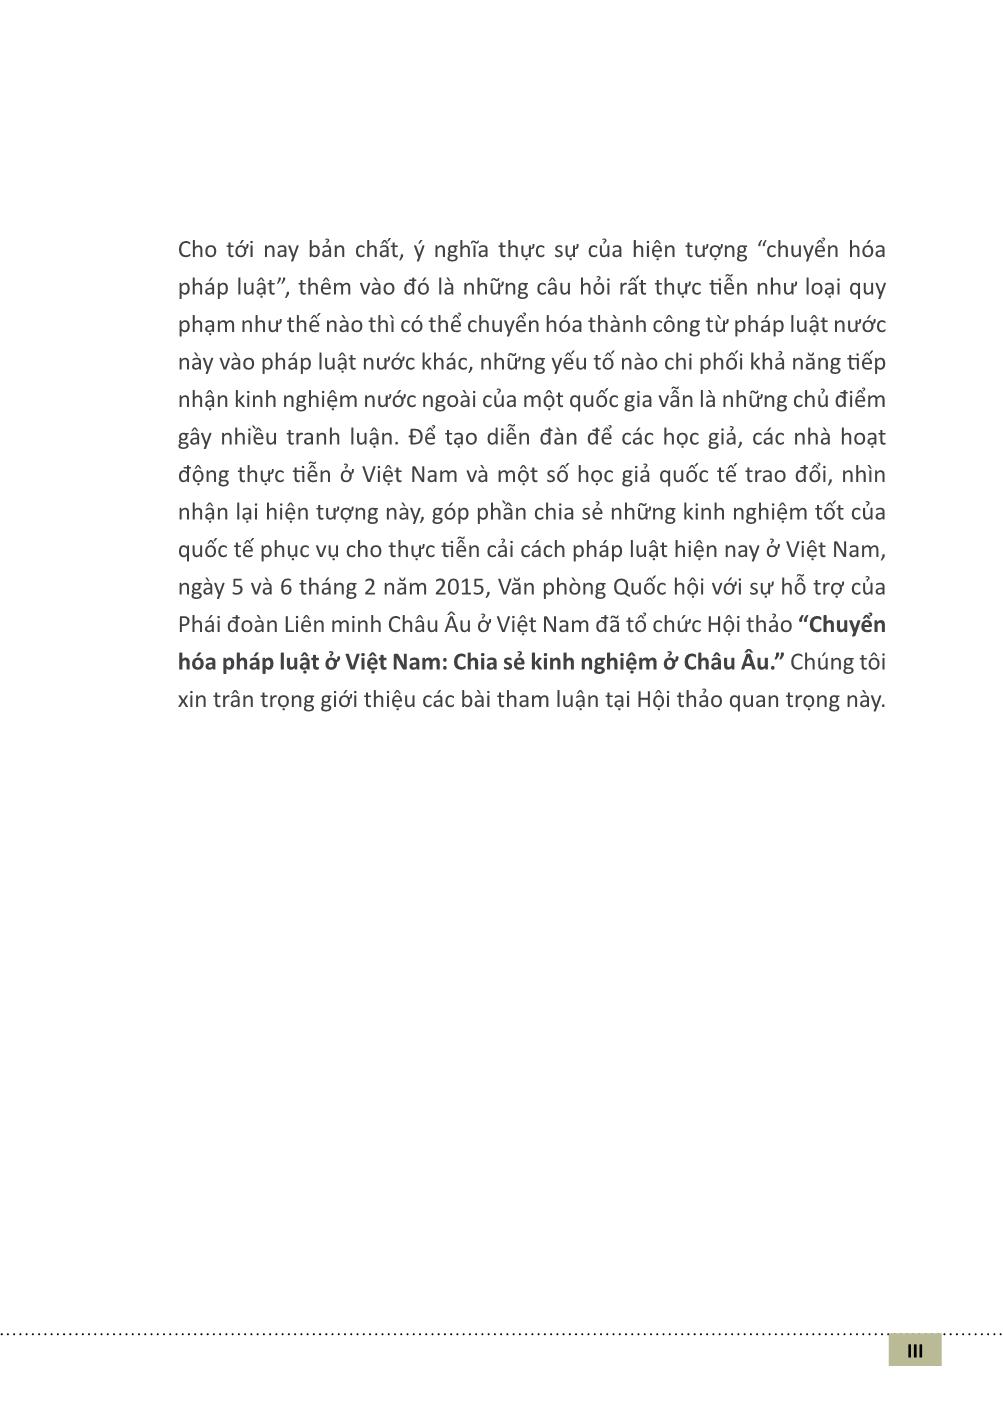 Chuyển hóa pháp luật và các vấn đề ở Việt Nam (Phần 1) trang 2